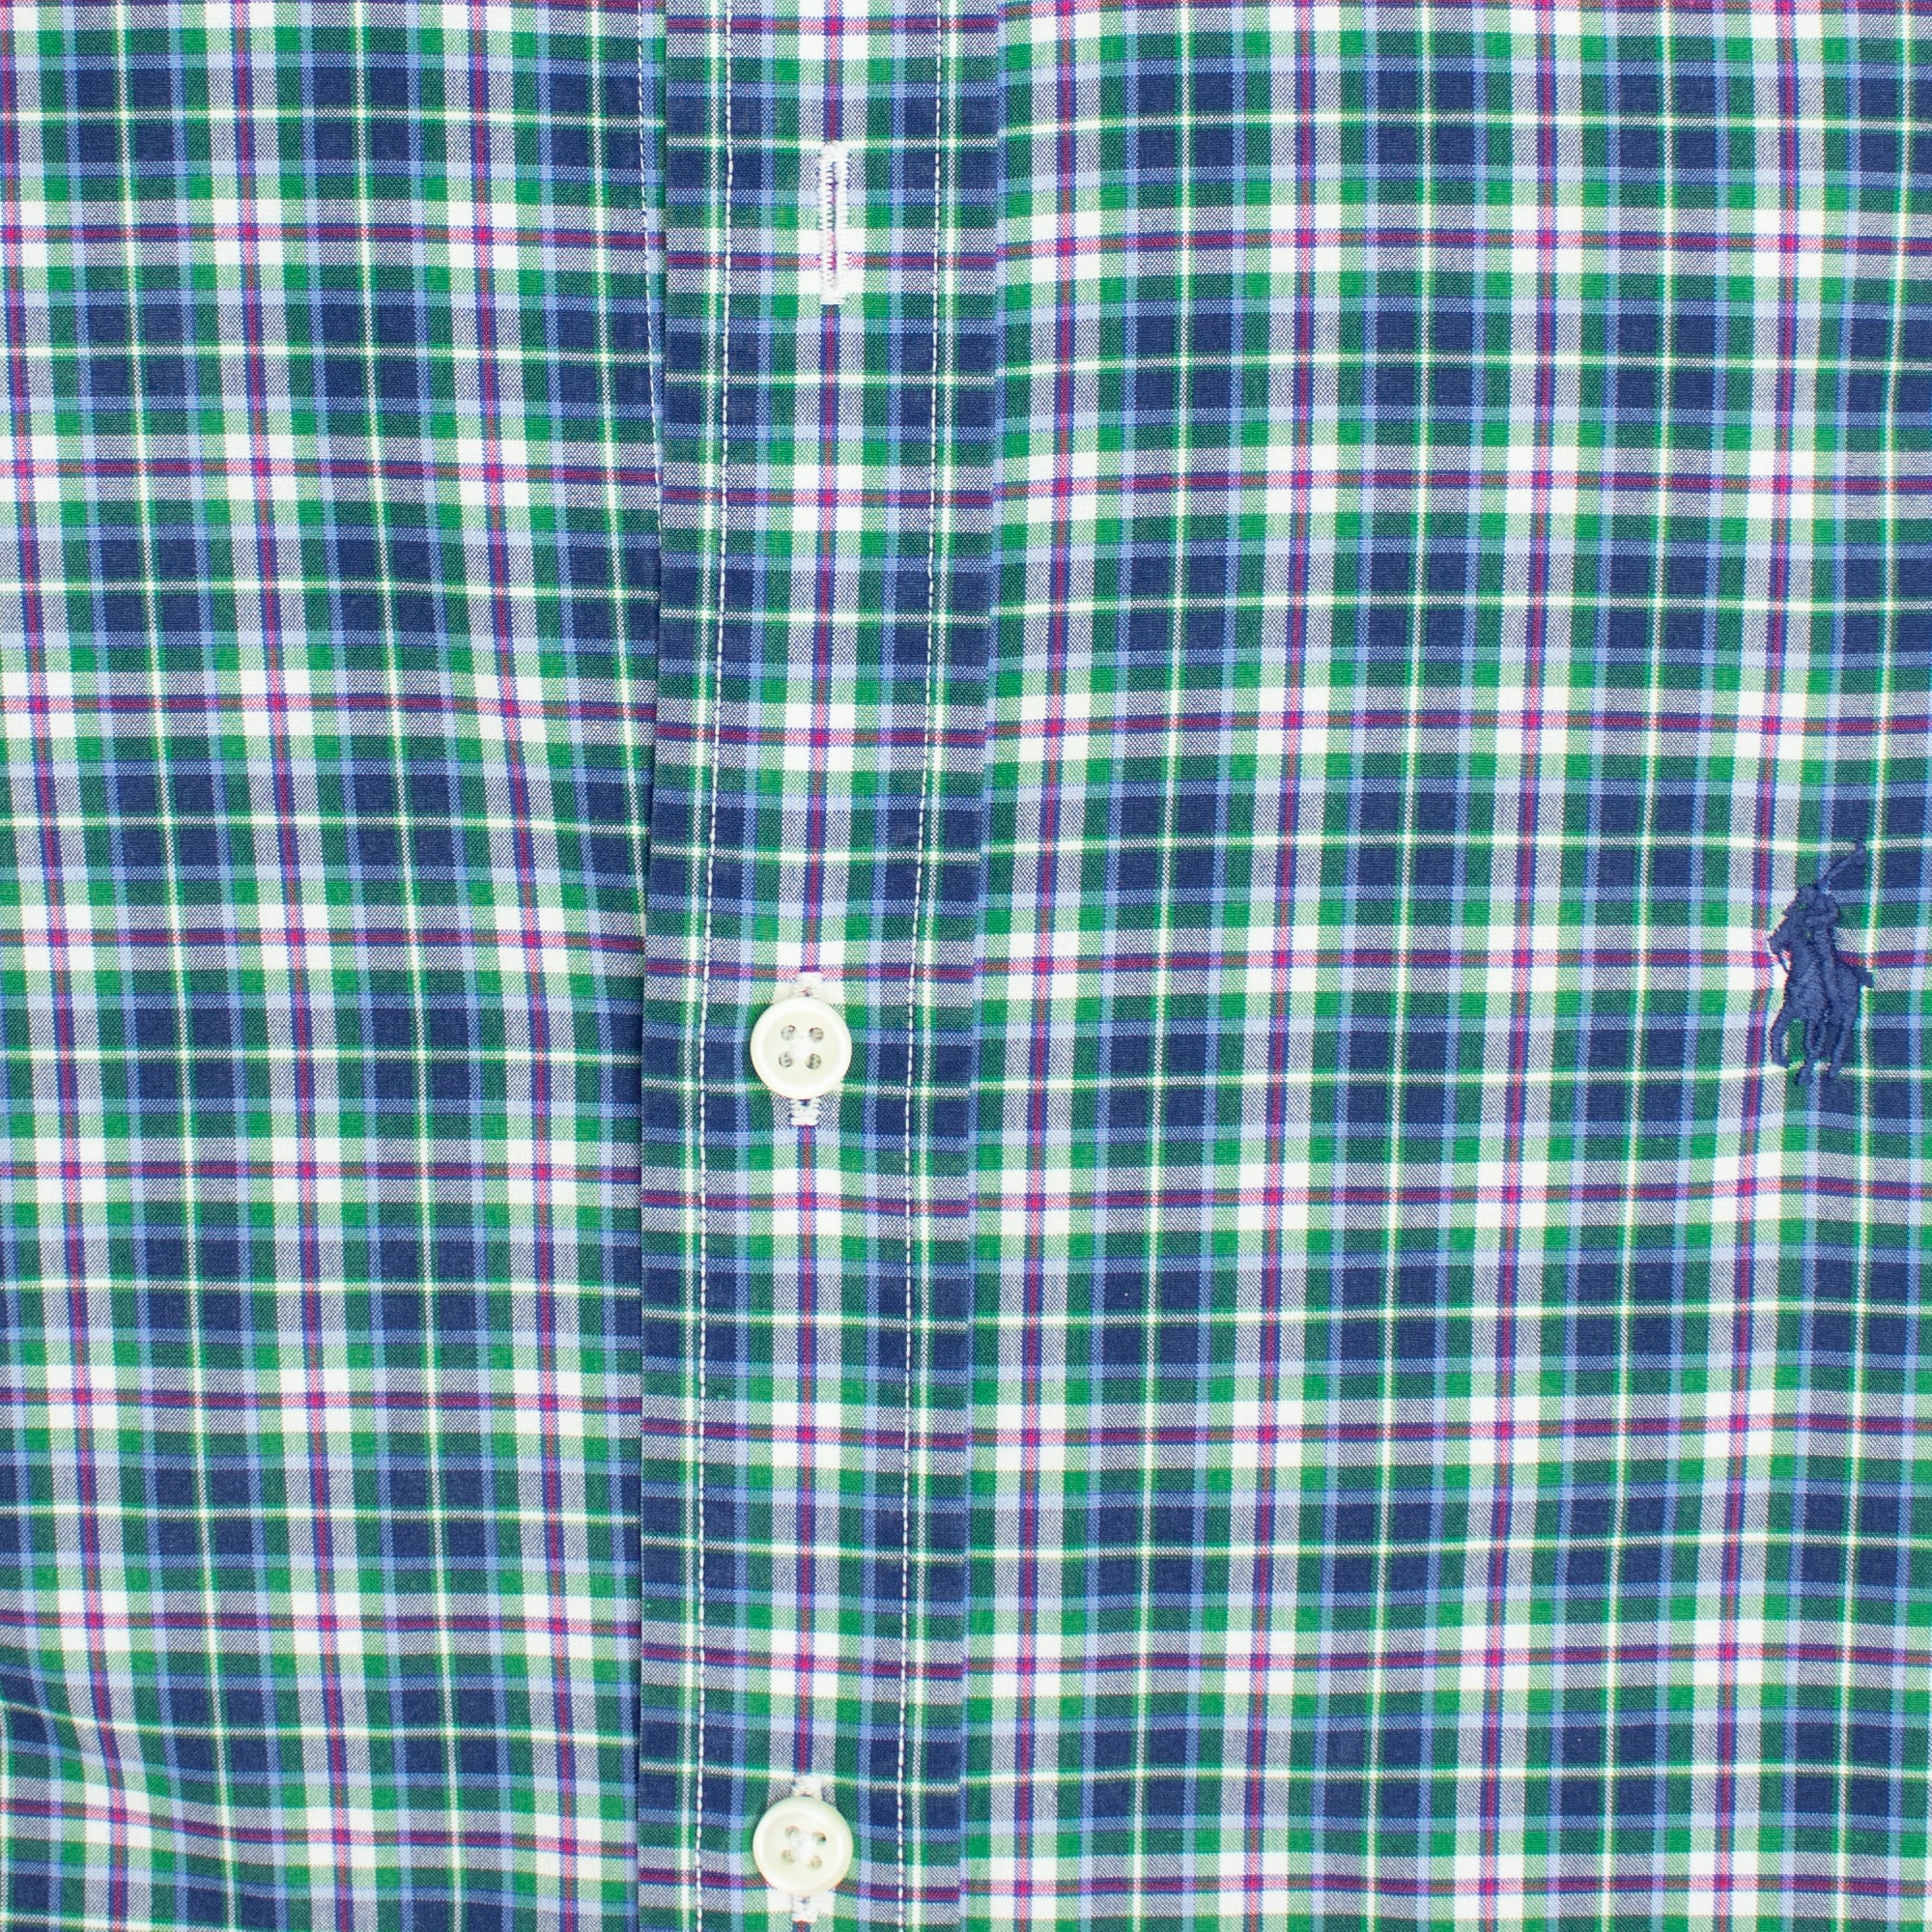 Vintage 100% Cotton Blue Plaid Extra Large Long Sleeve Shirt — Ralph Lauren